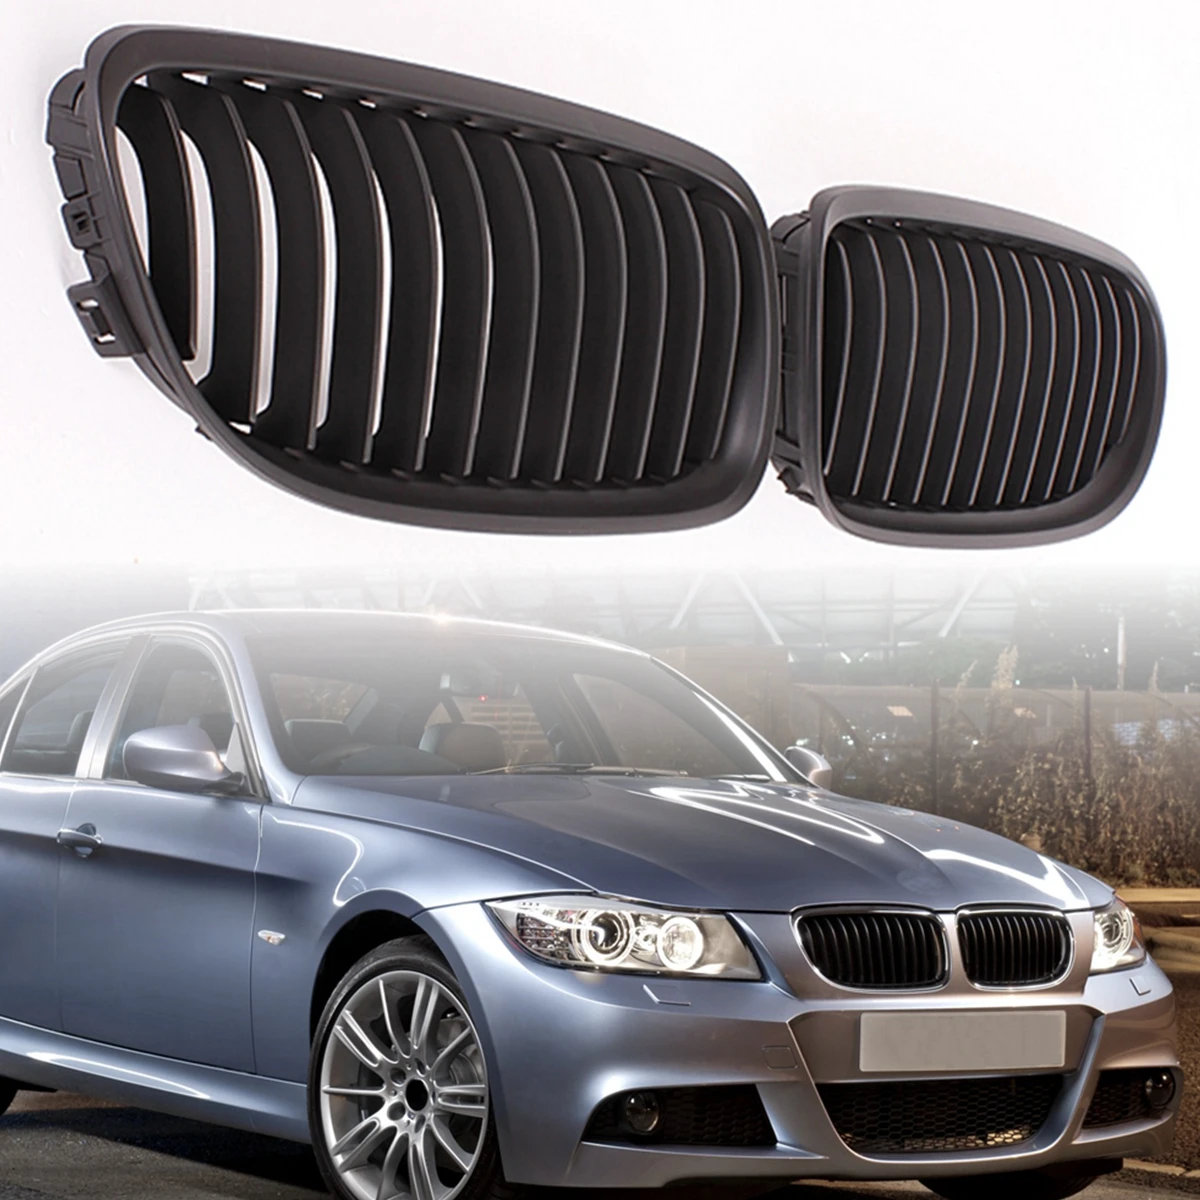 Пара матовый/черный глянец автомобилей Передняя решетка радиатора для BMW E90 LCI 3-серии седан/универсал 09-11 гоночные решетки